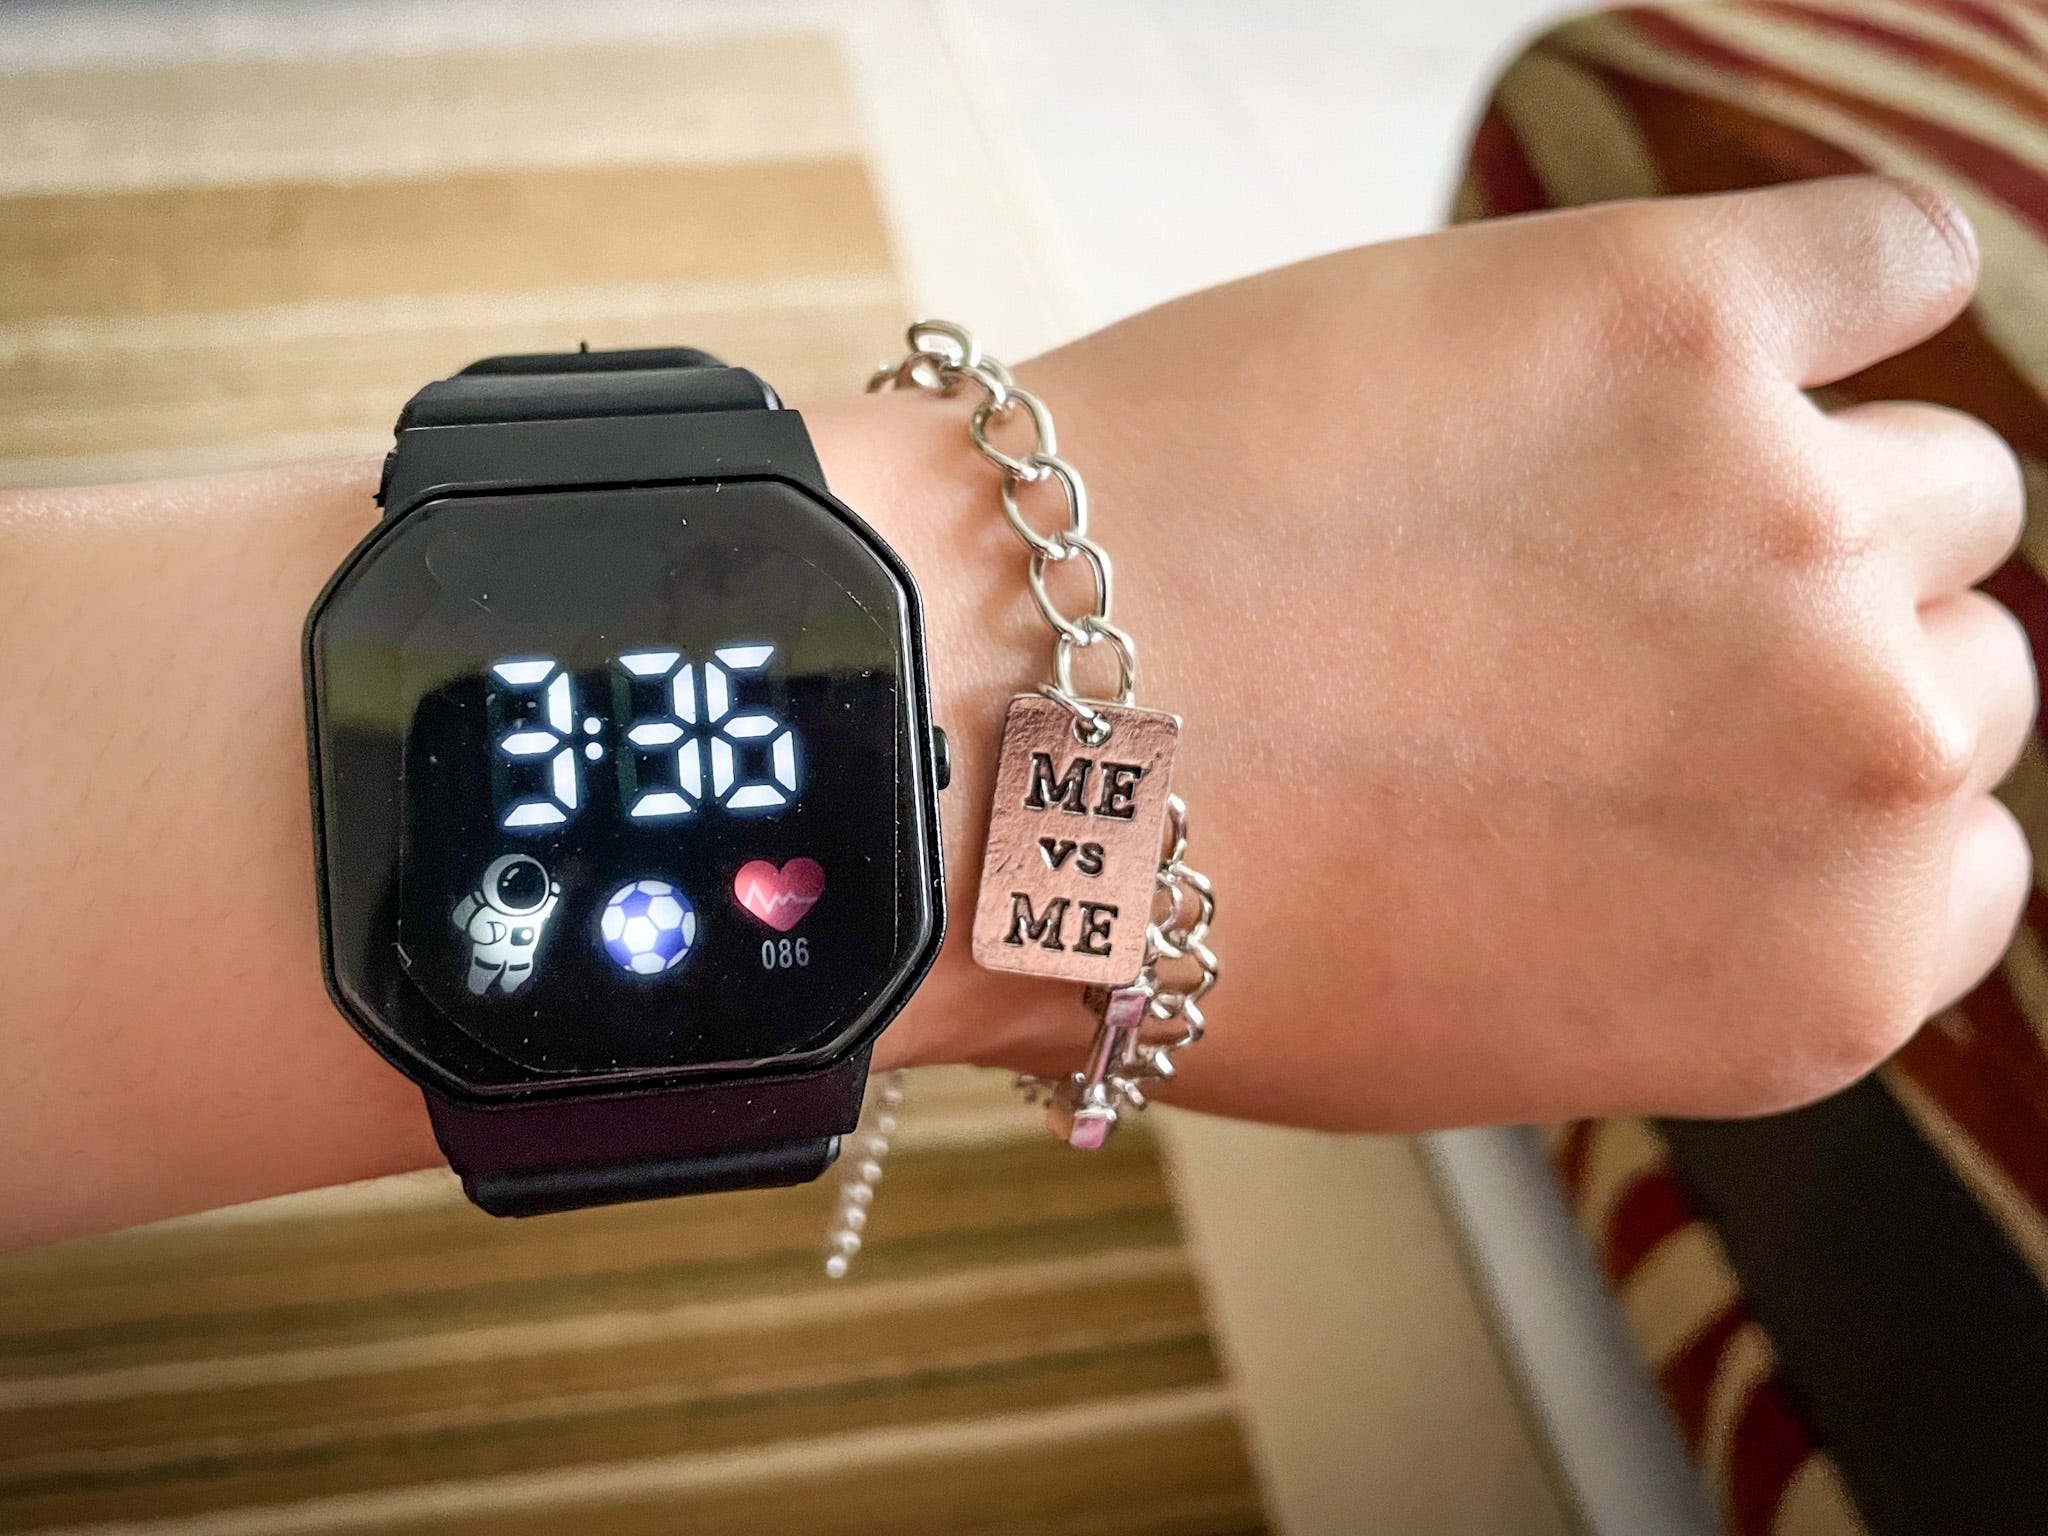 Testen von Taobaos Apple Watch Dupe.